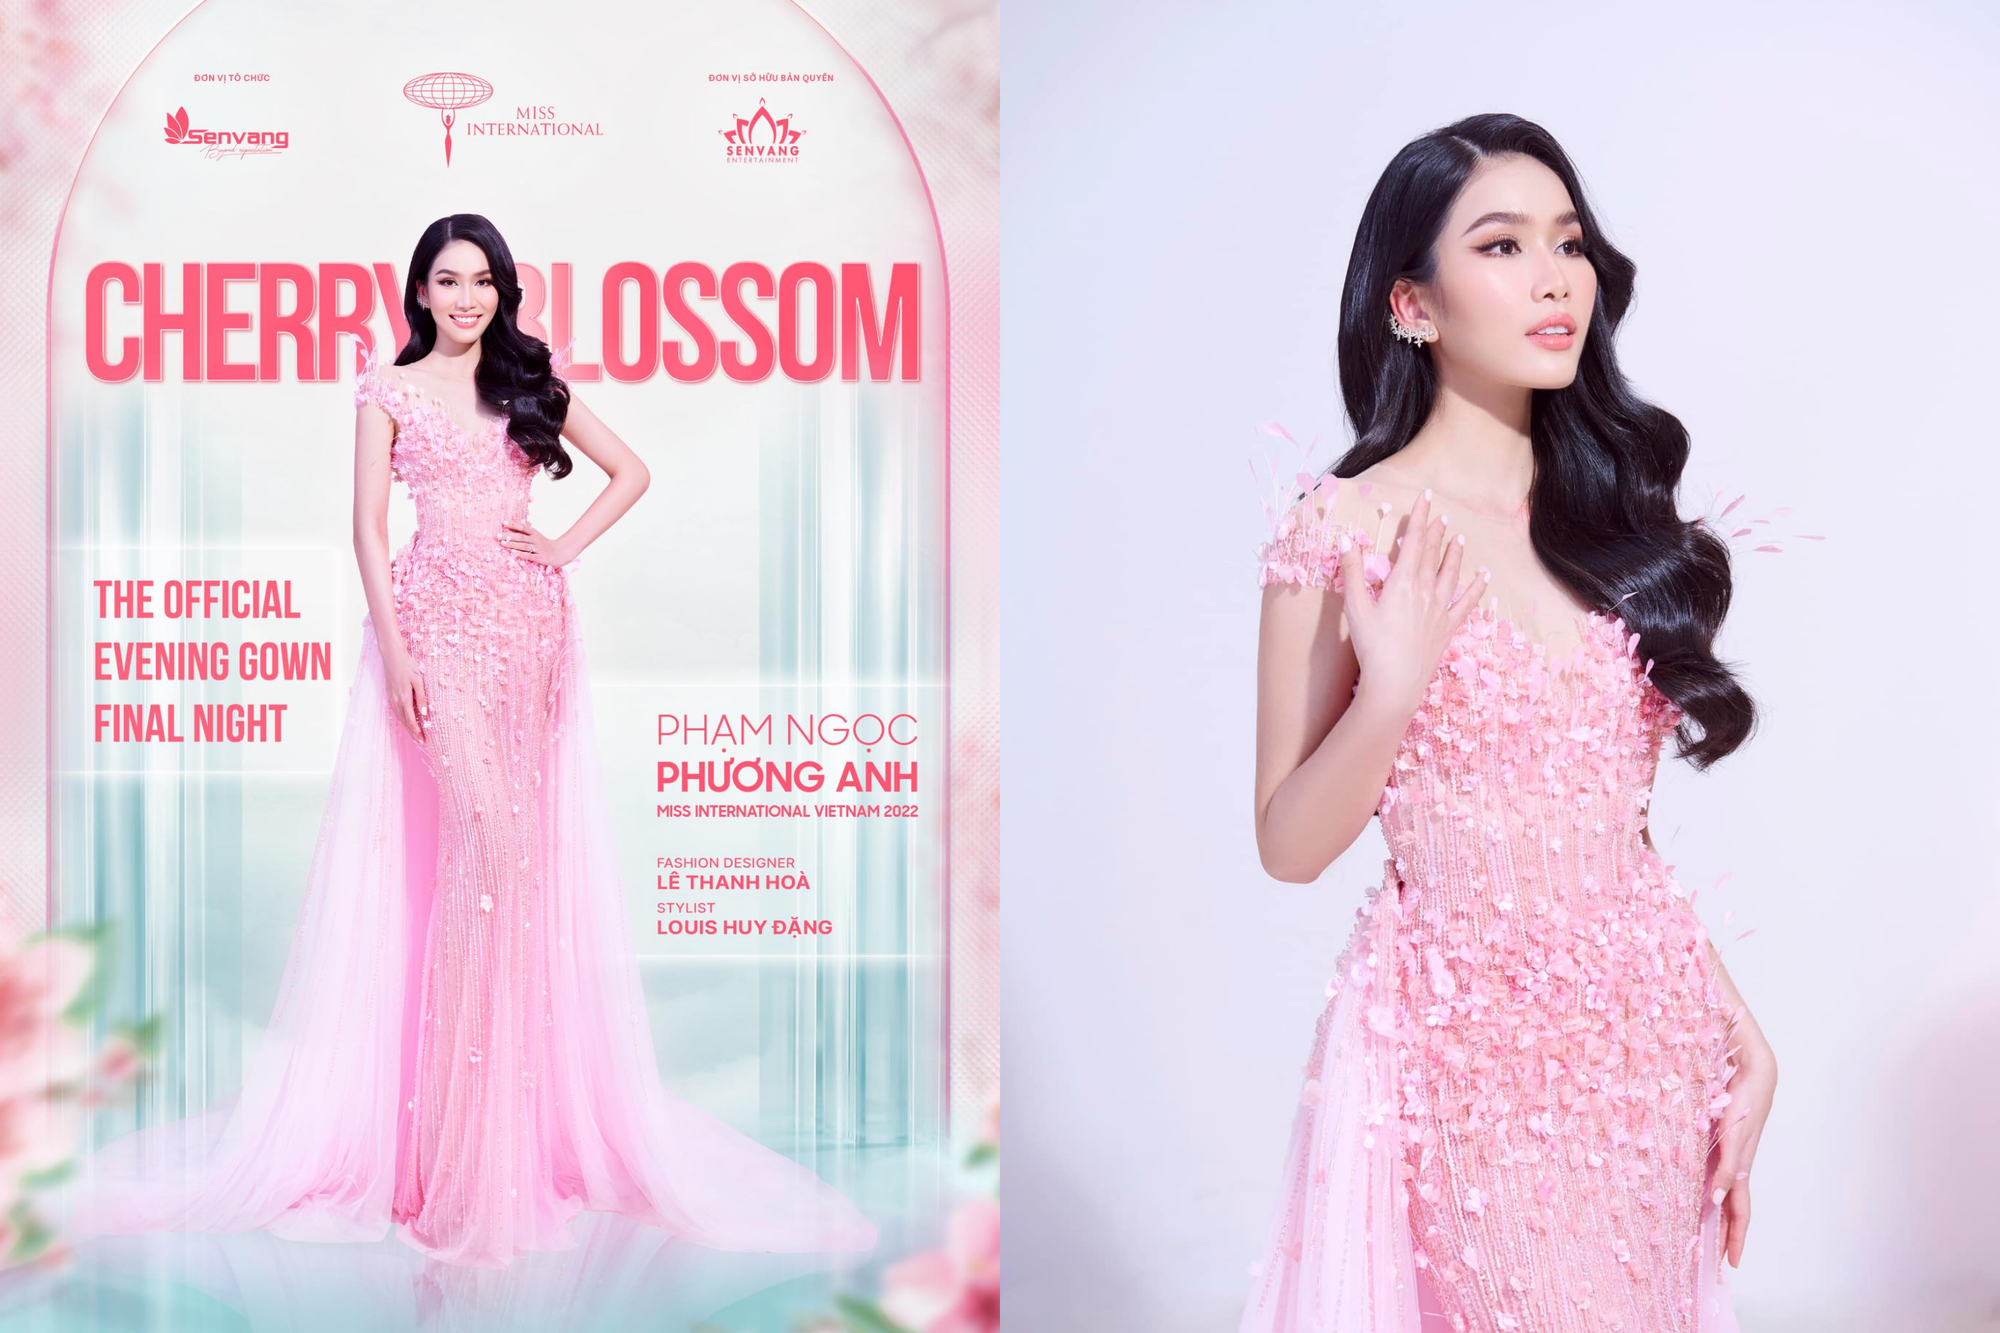 Váy của Á hậu Phương Anh khiến netizen thở dài vì một chi tiết - Ảnh 1.